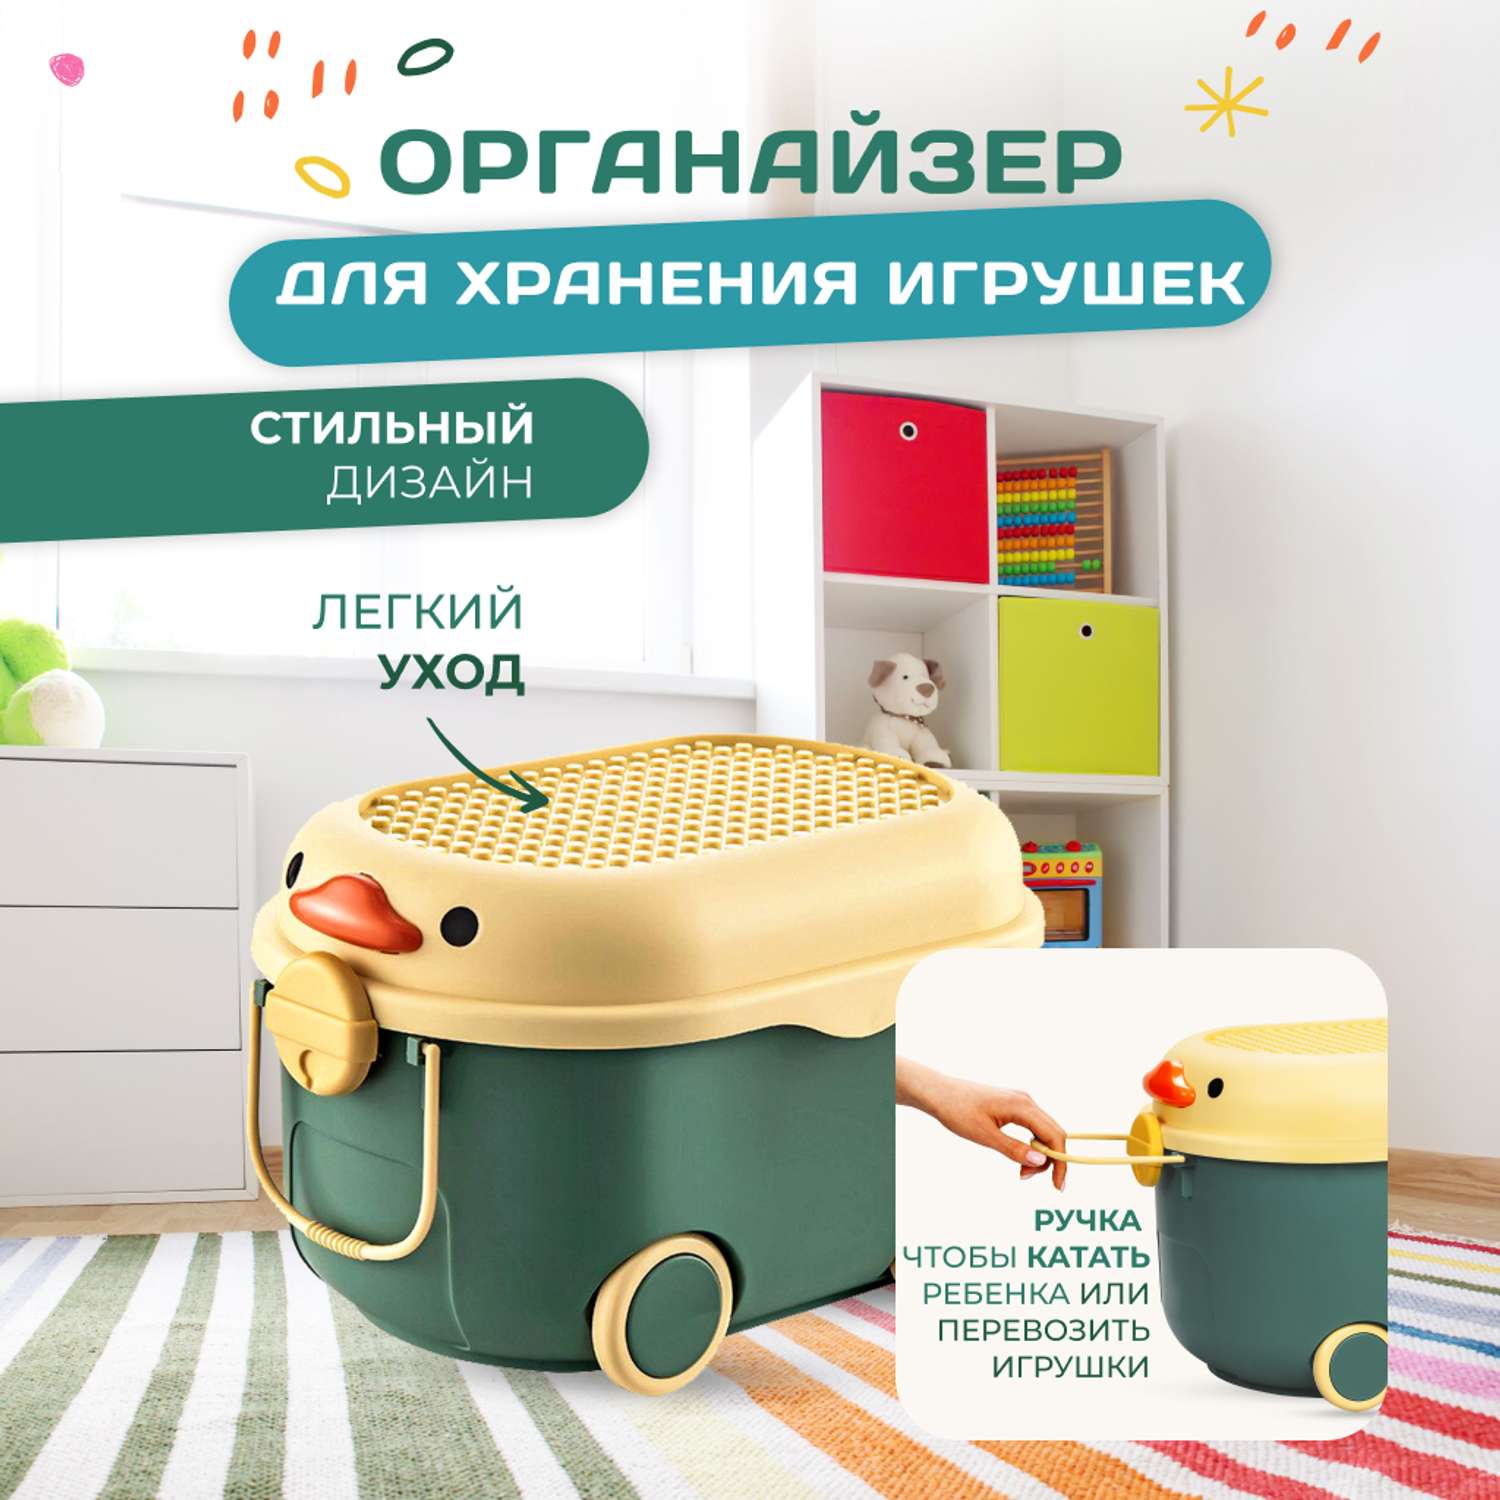 Купить ящик для хранения детских игрушек недорого в Украине